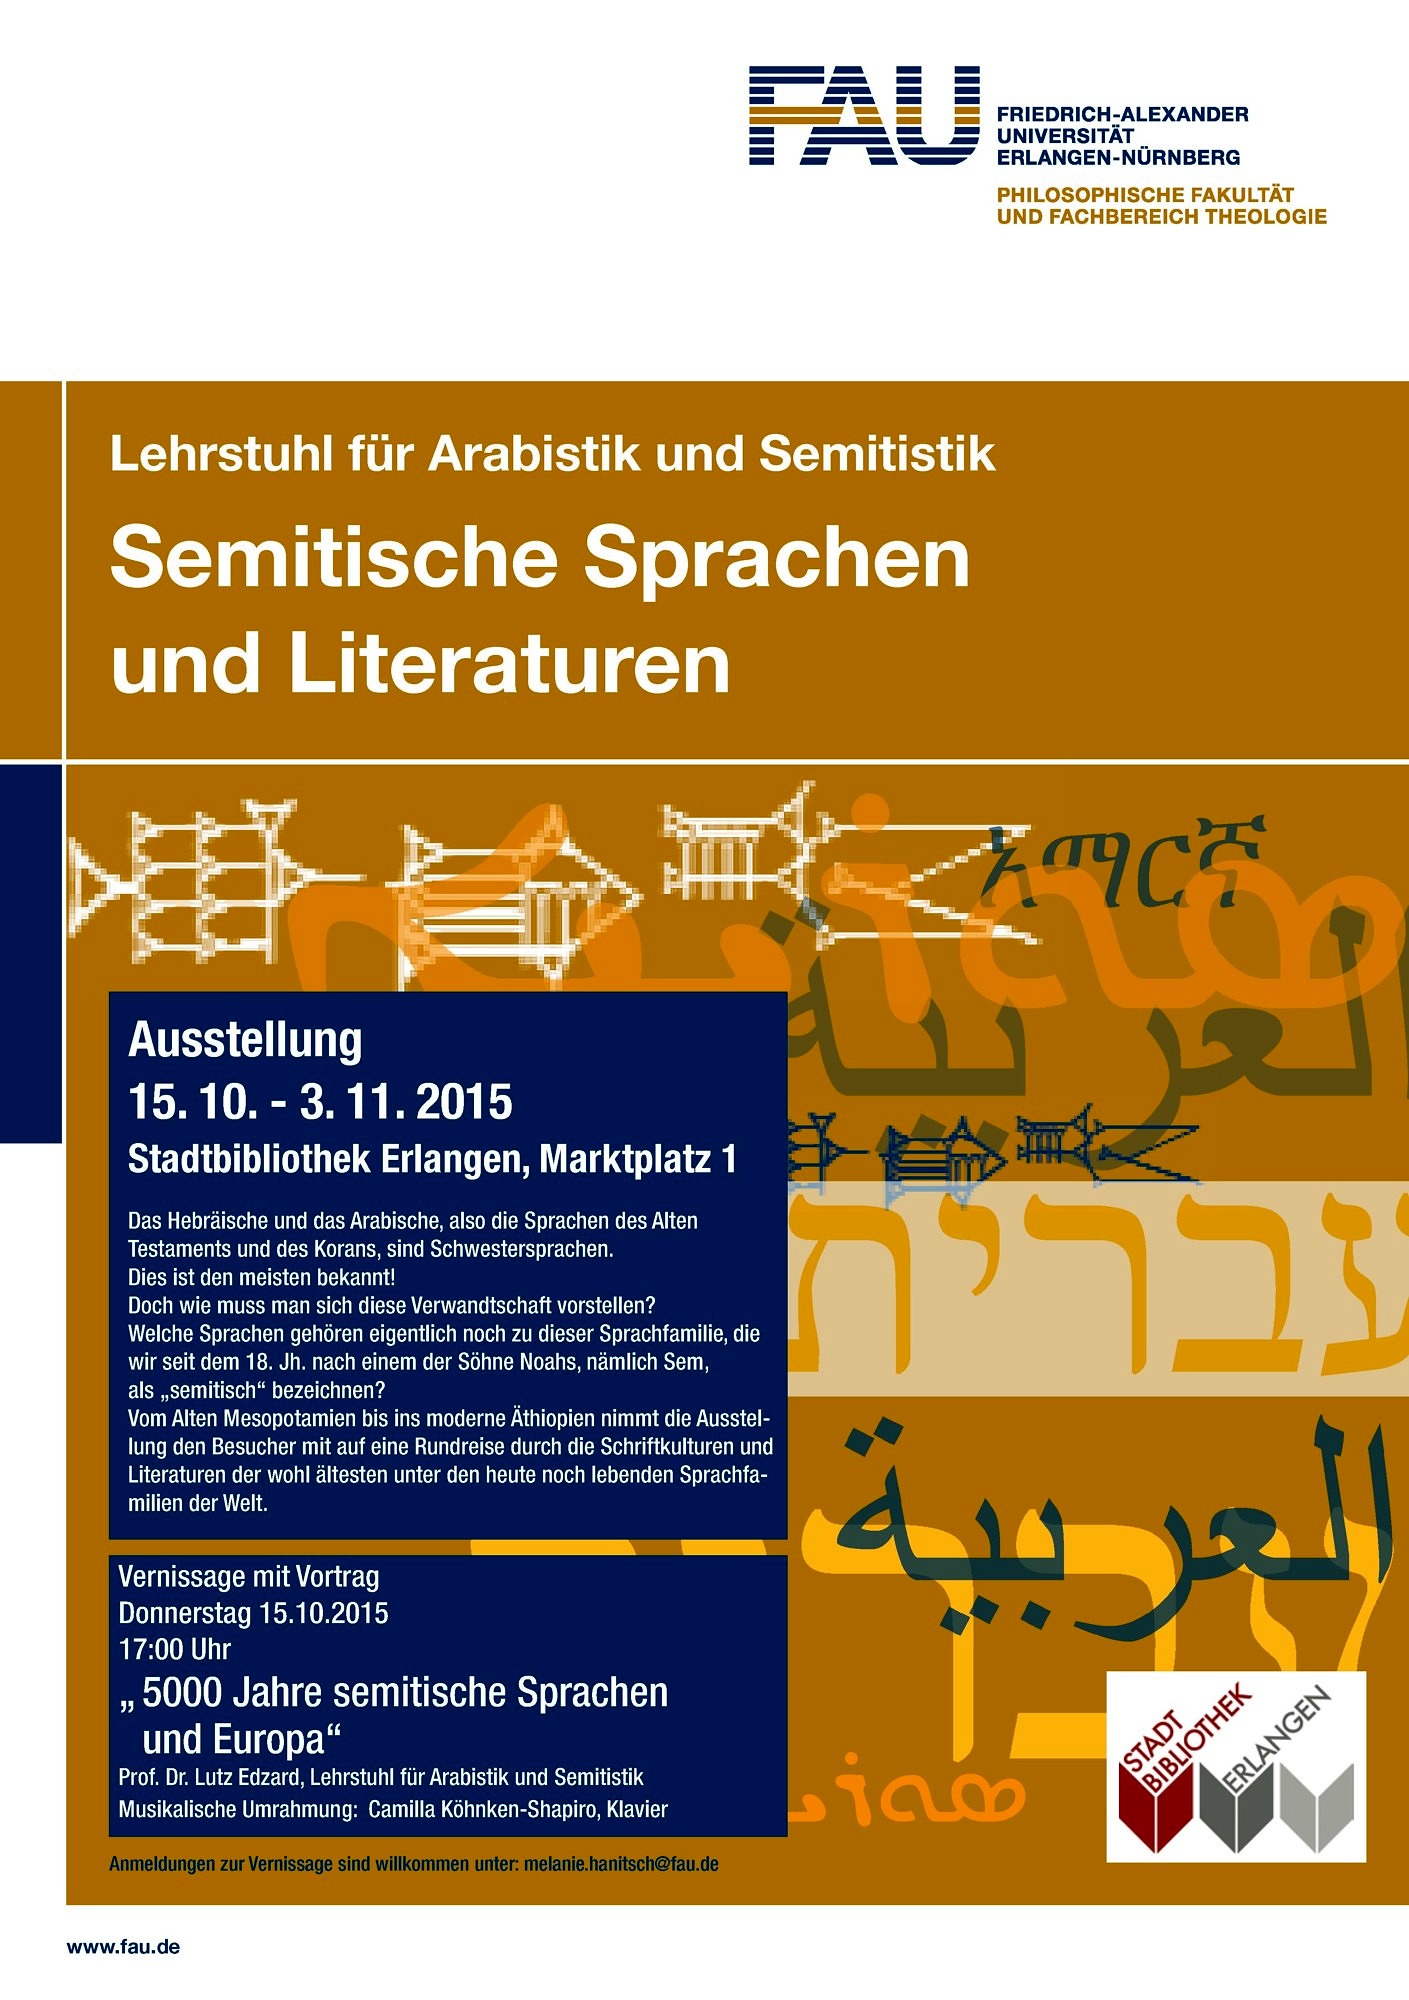 Ausstellung Semitische Sprachen und Literaturen